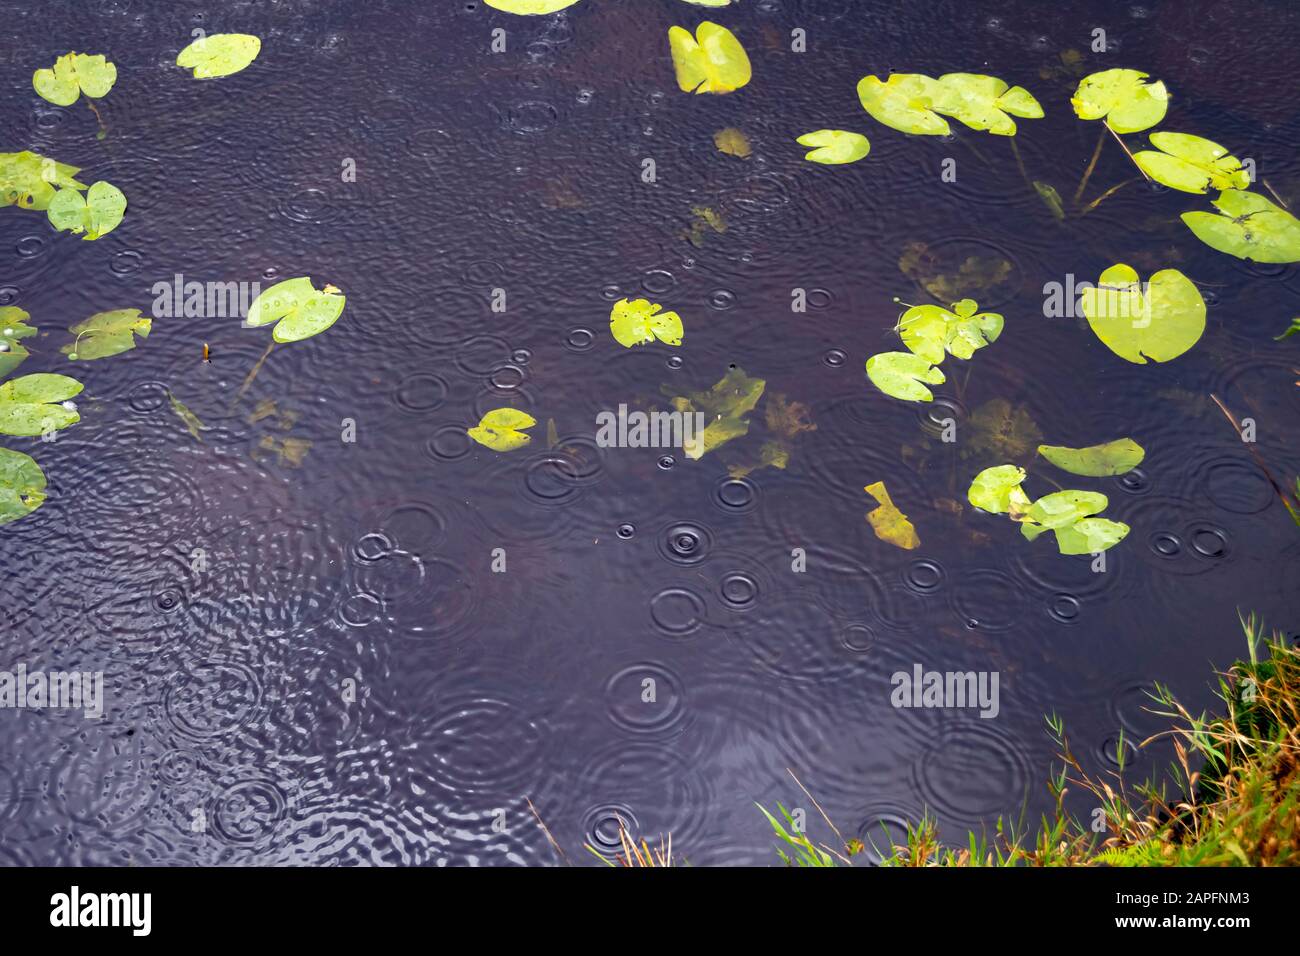 Regen fällt auf Wasser, Bearded Lake, in der Nähe von Aberdovey, Aberdyfi, Wales Stockfoto